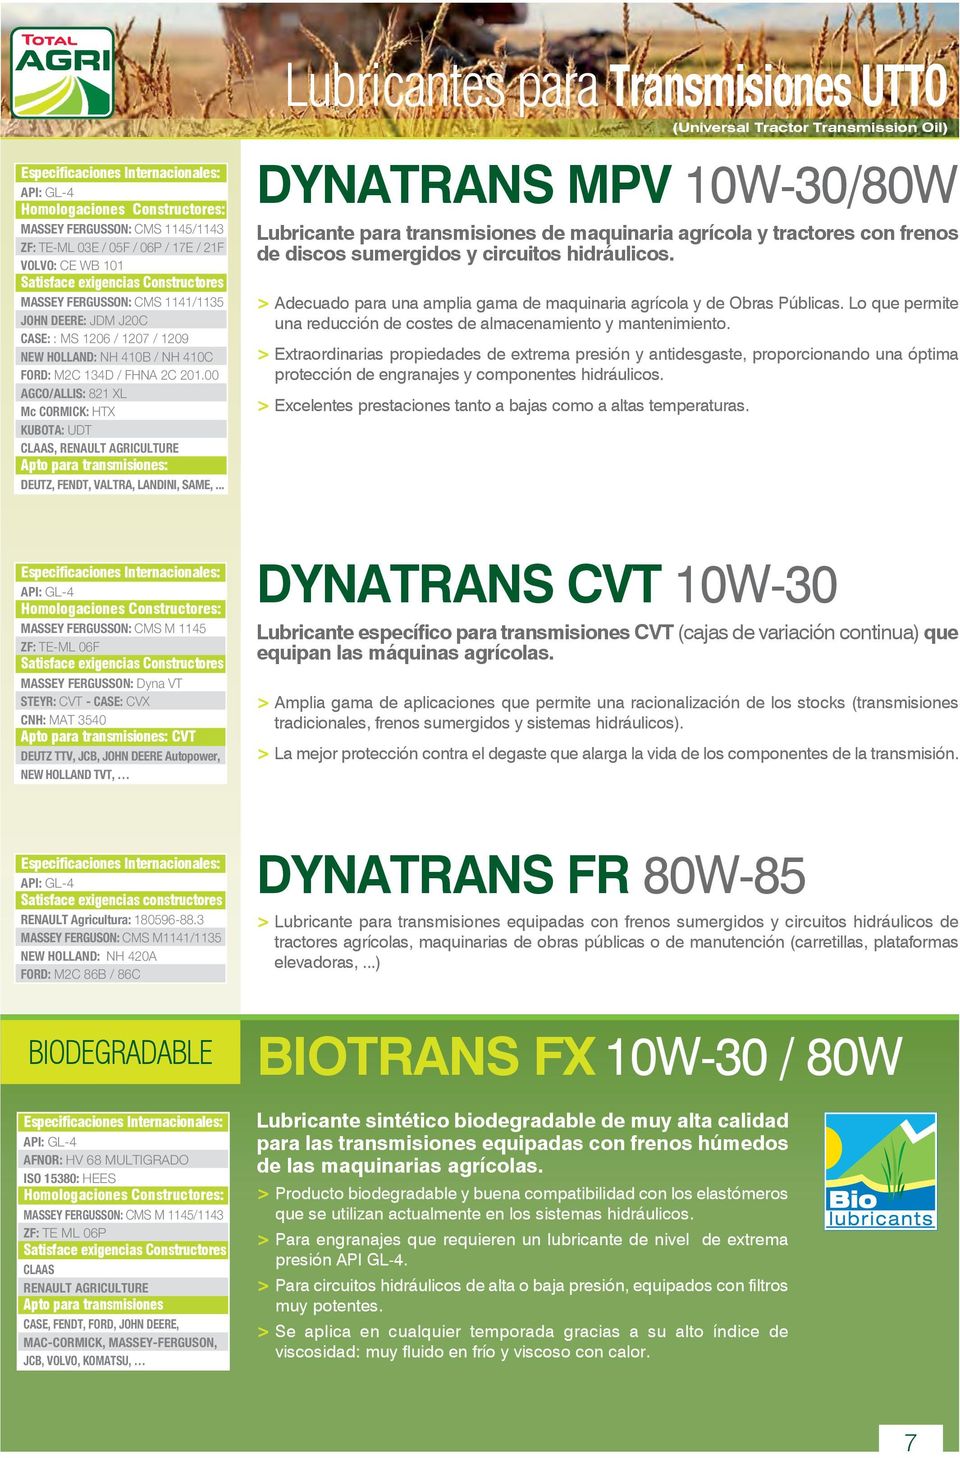 .. Lubricantes para Transmisiones UTTO DYNATRANS MPV 10W-30/80W Lubricante para transmisiones de maquinaria agrícola y tractores con frenos de discos sumergidos y circuitos hidráulicos.